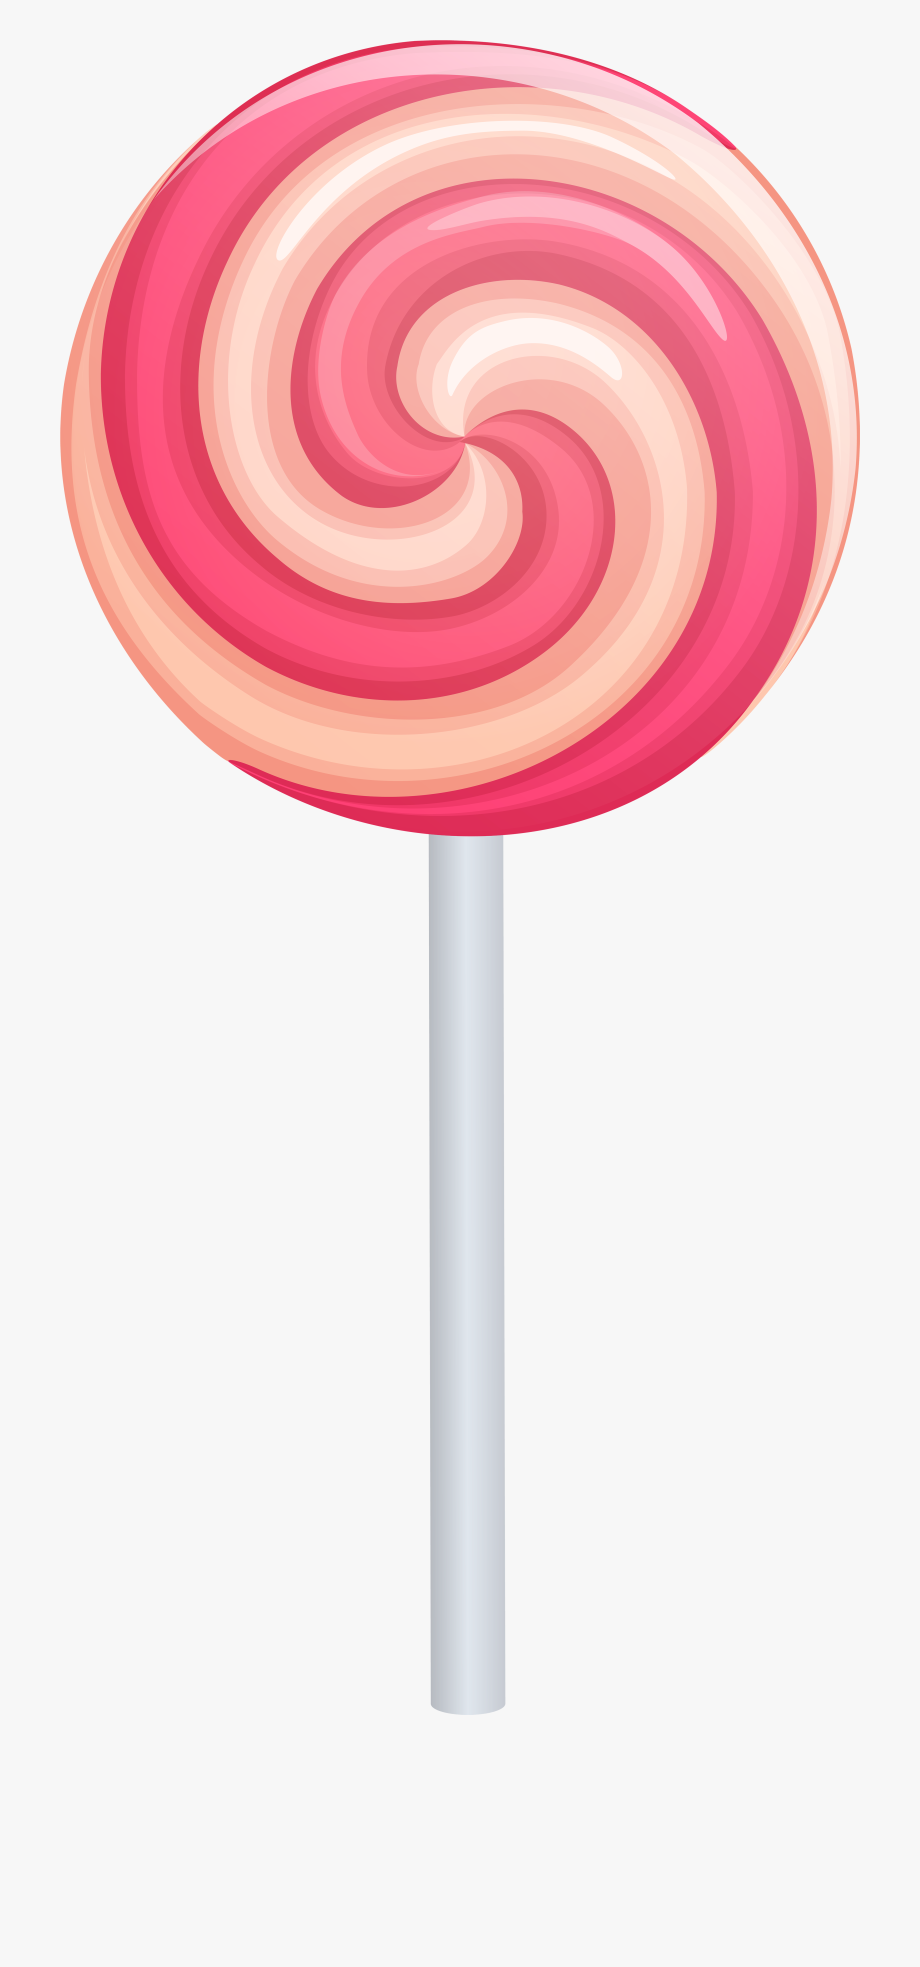 Lollipop clipart swirly, Picture #2925797 lollipop clipart swirly